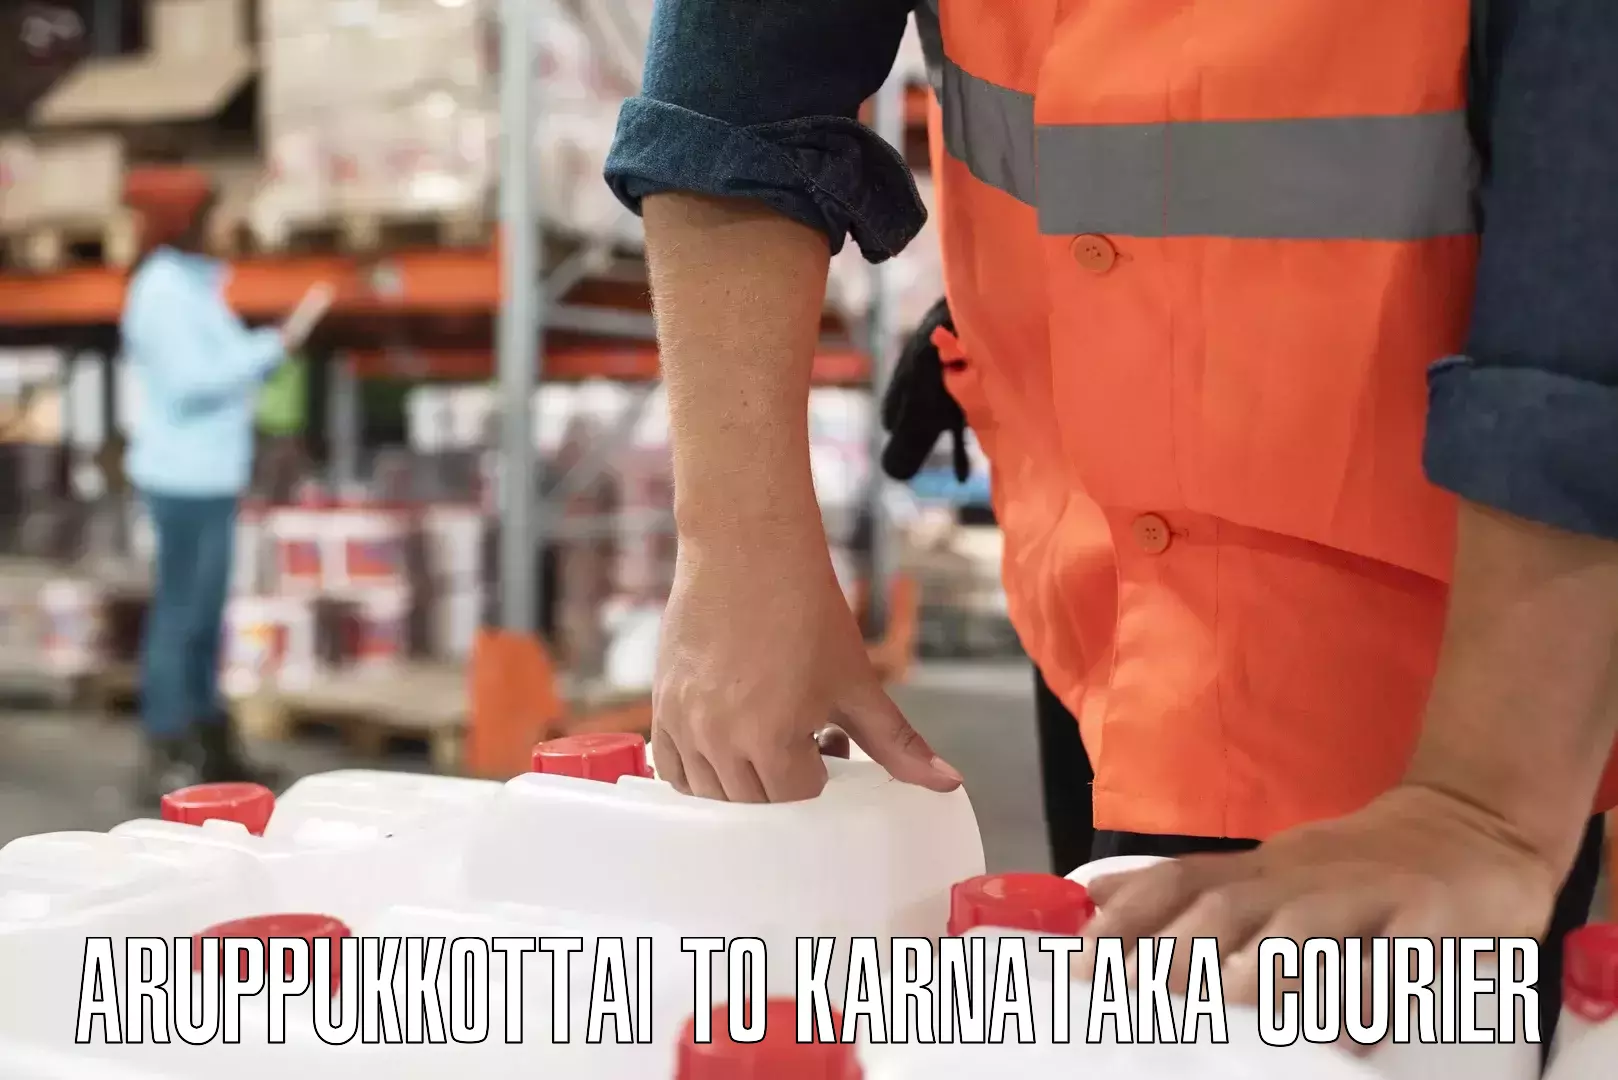 Premium courier solutions Aruppukkottai to Hanur